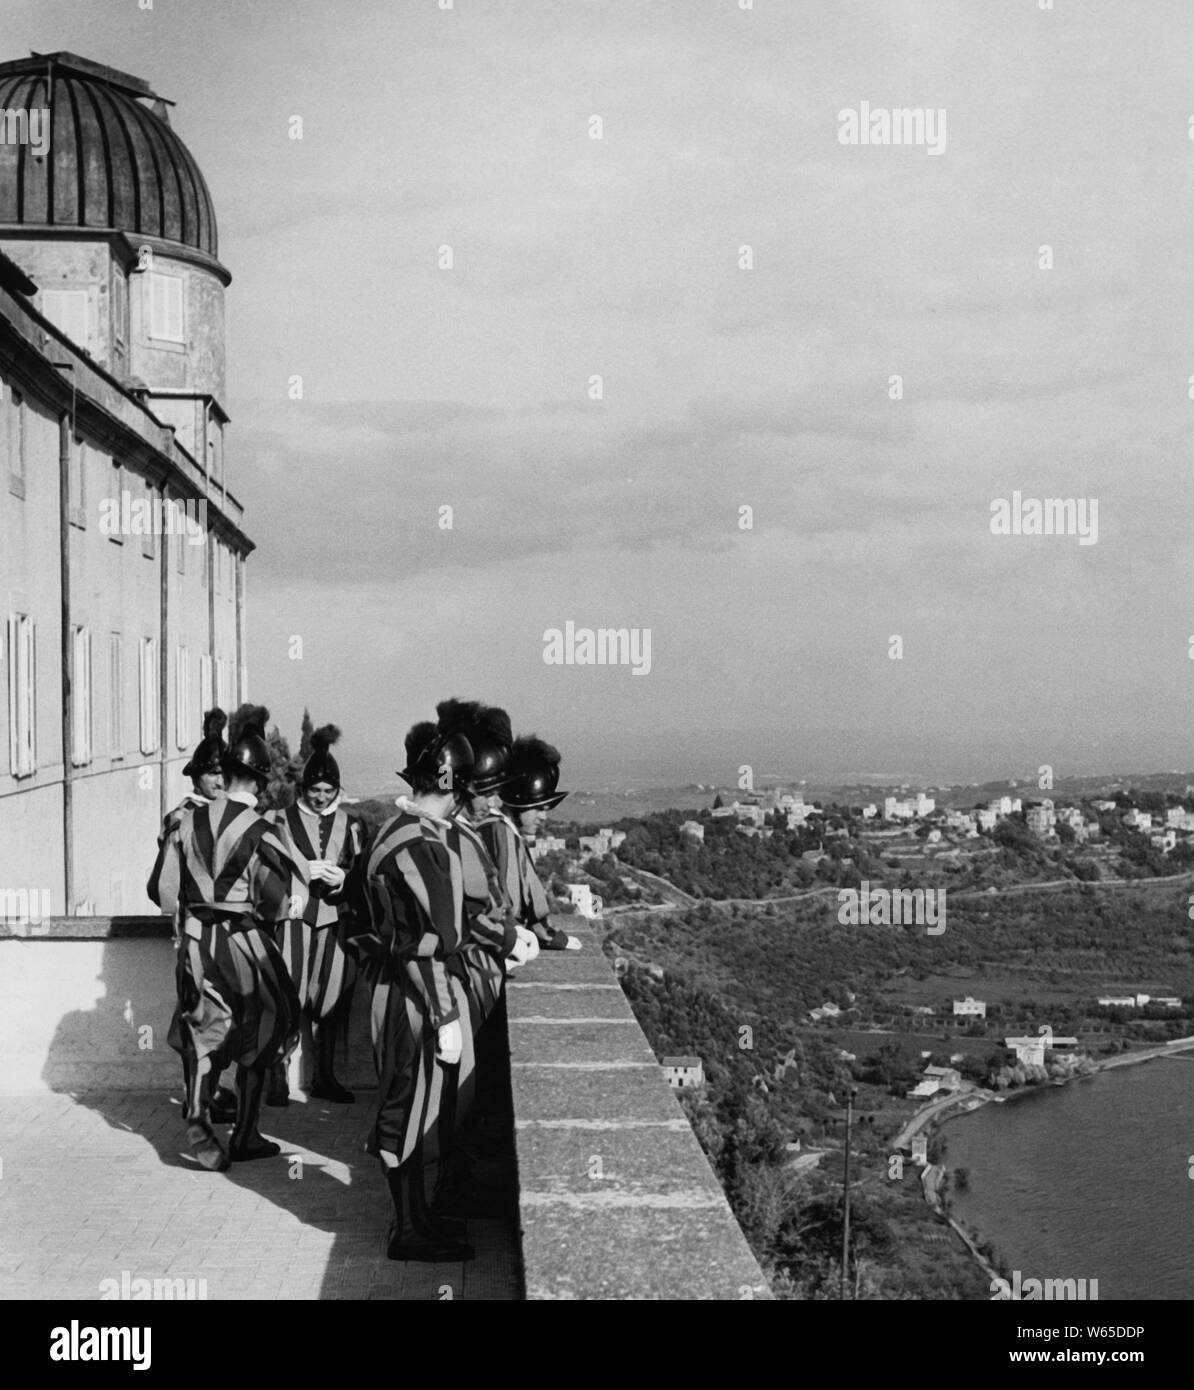 Gardes suisses sur la terrasse du palais des papes, 1950 Banque D'Images